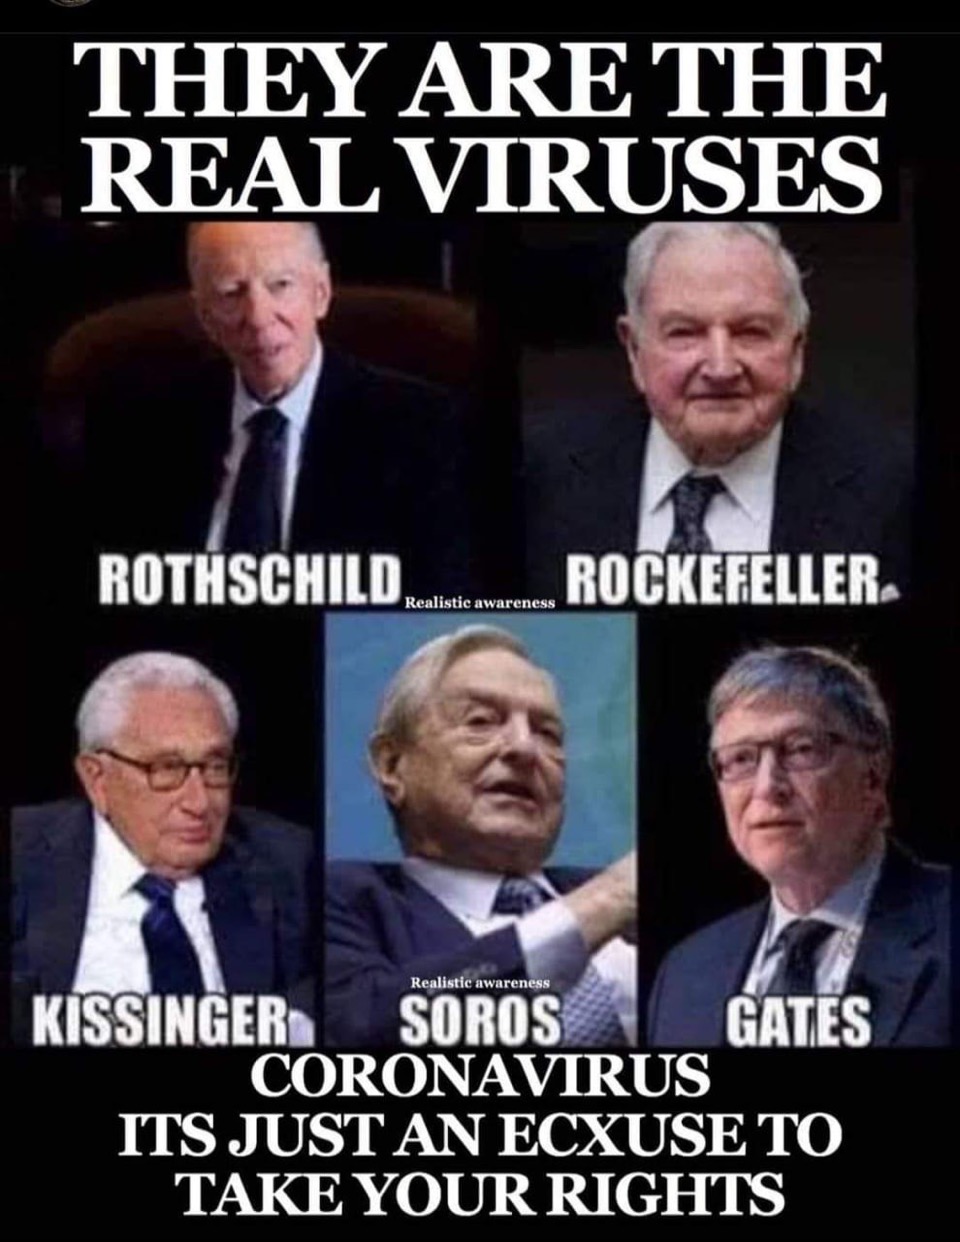 genocidaire rockefeller Rothschild